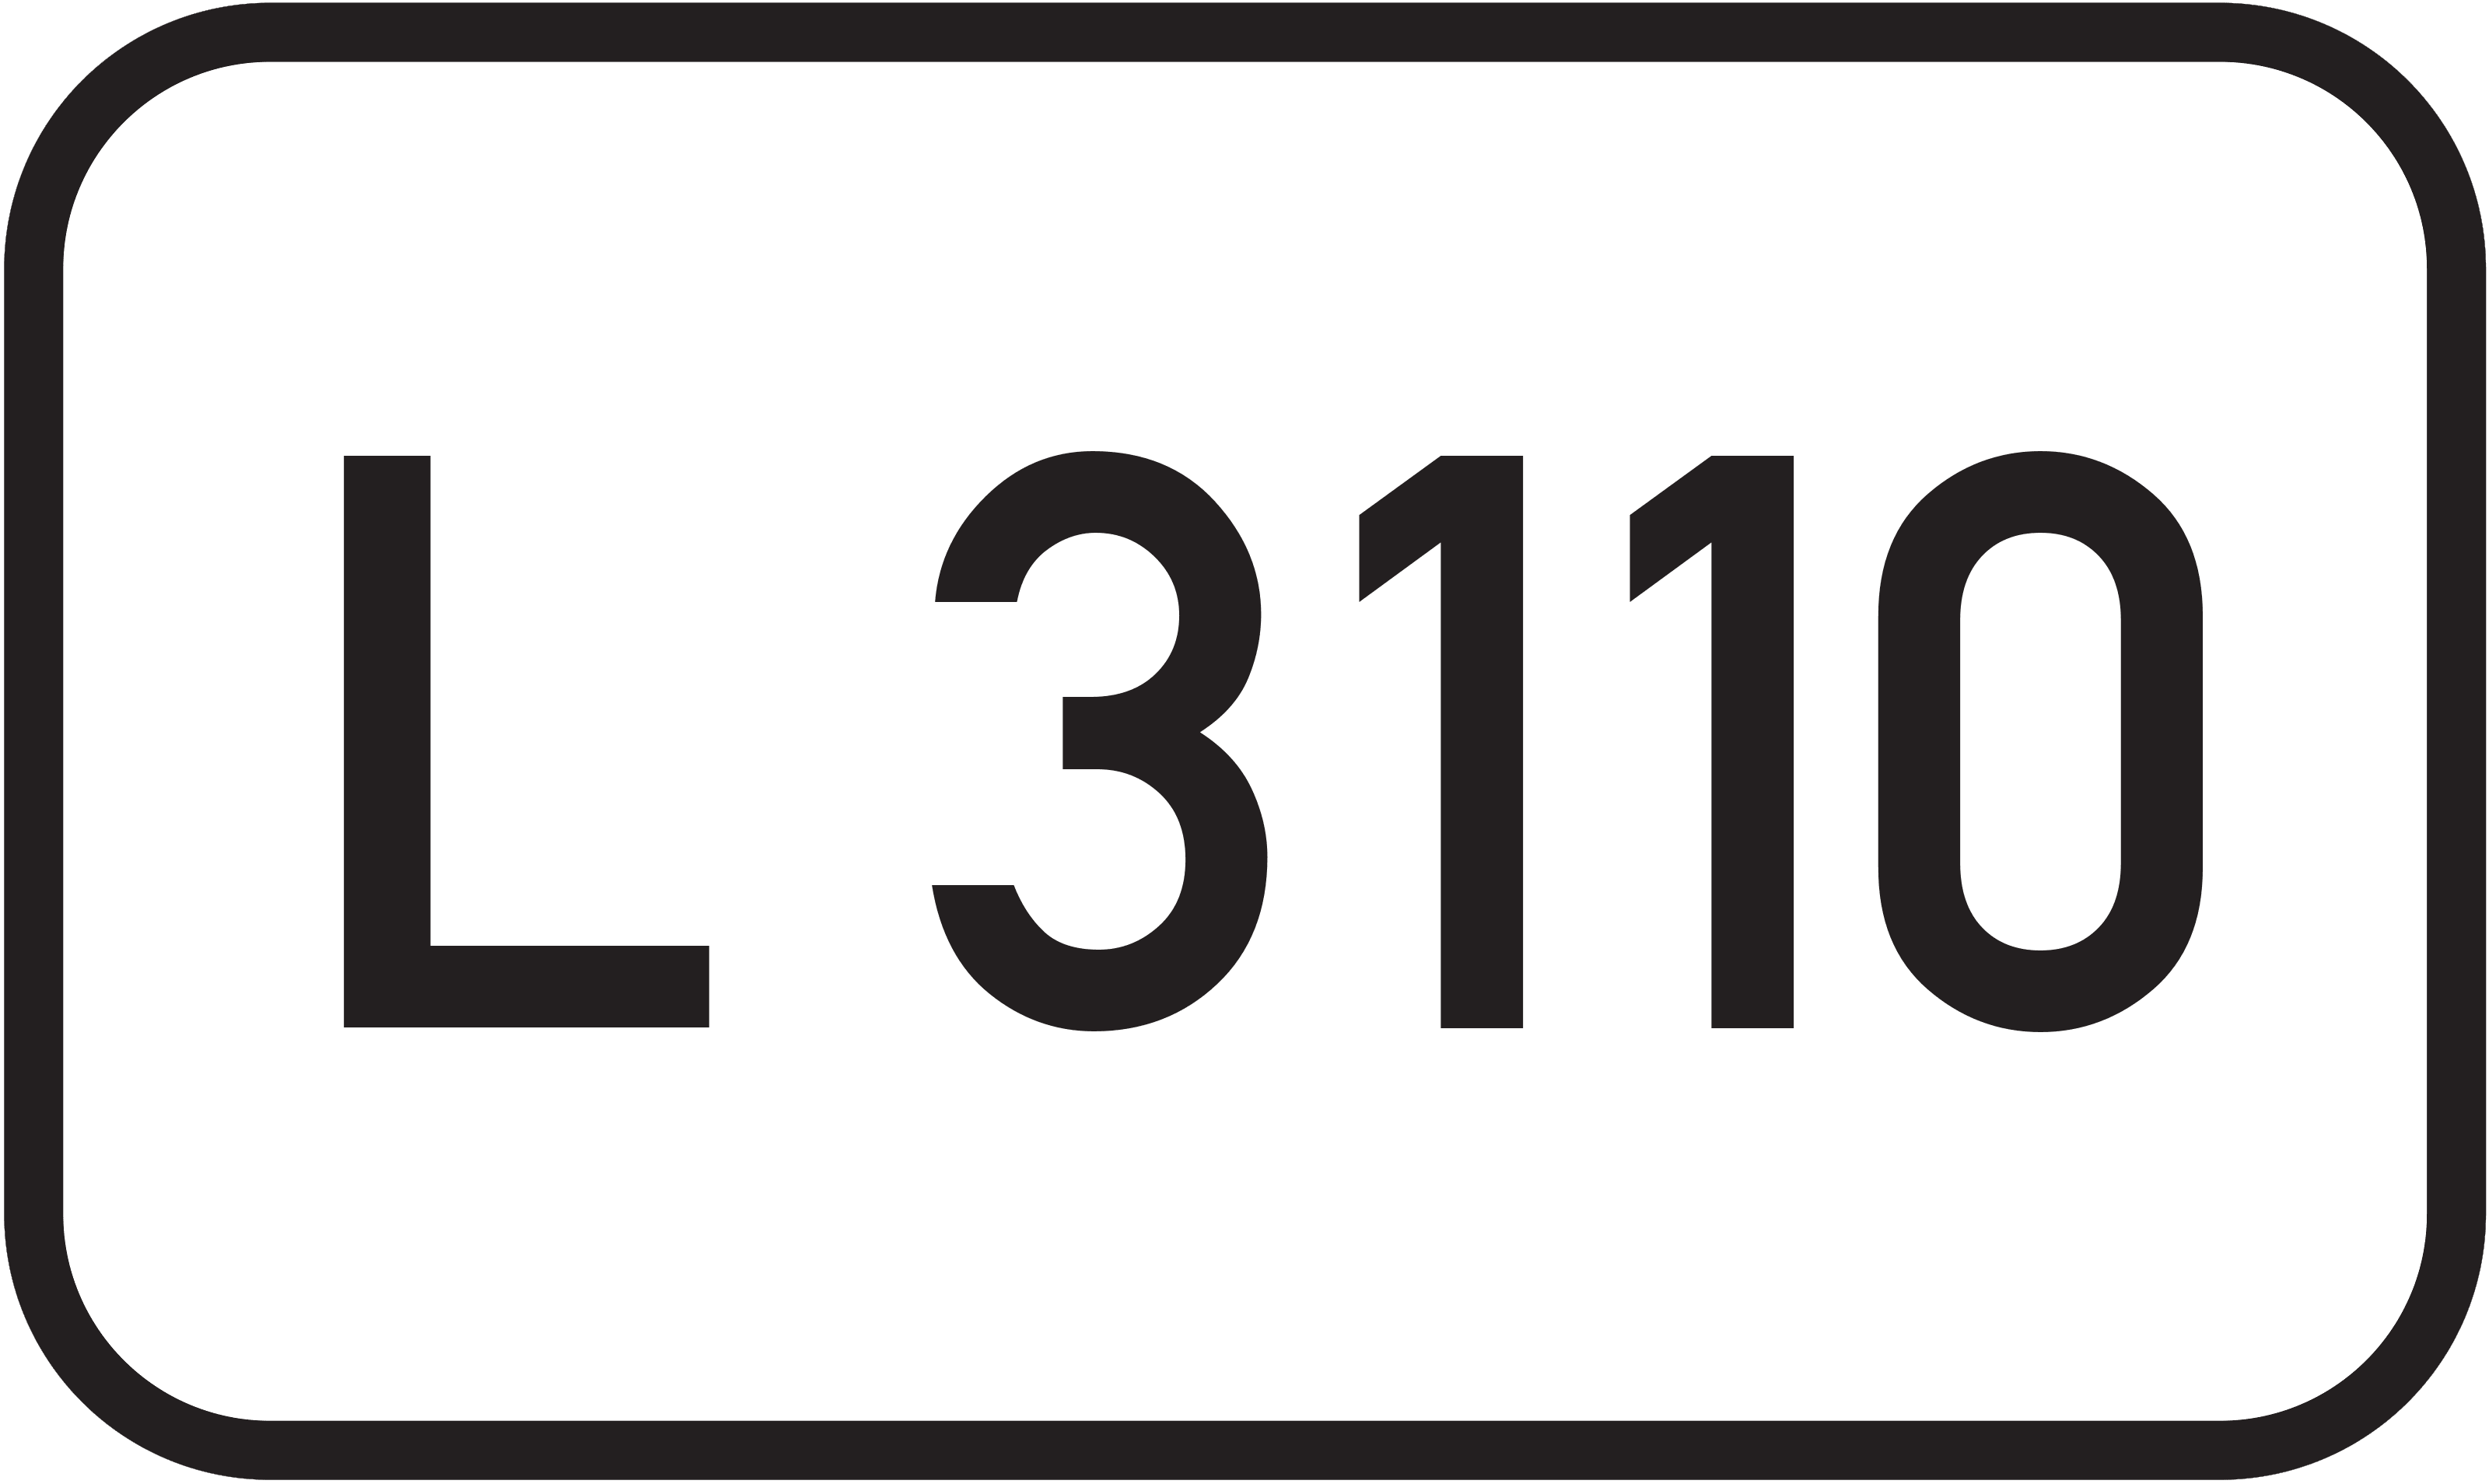 Landesstraße L 3110